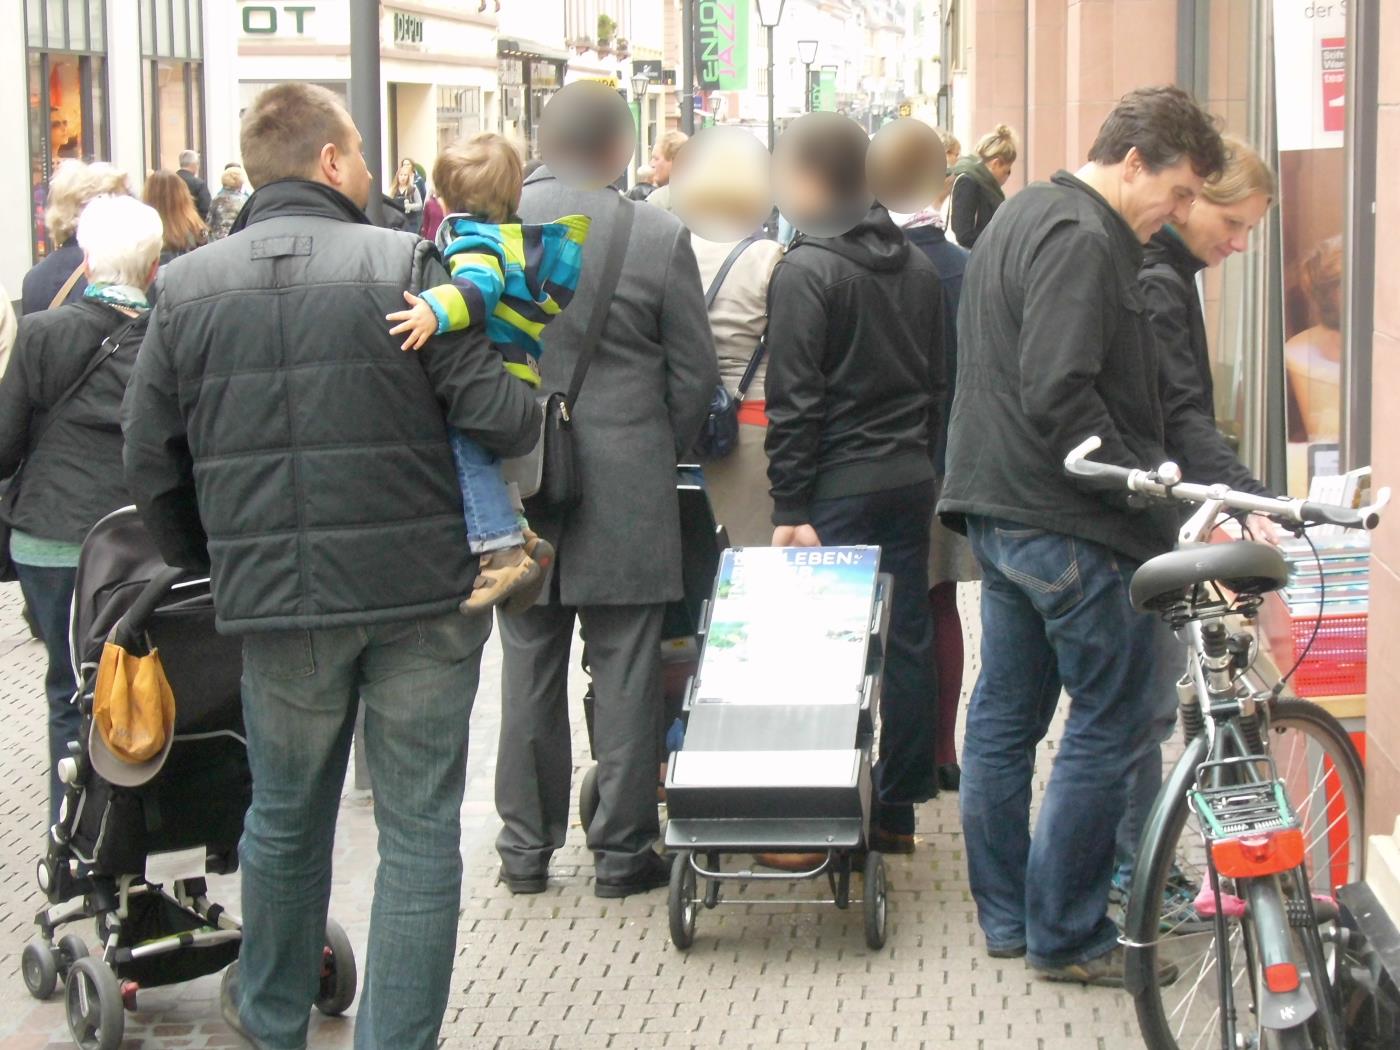 Heidelberg: Jehovas Zeugen Verblutungsprozession